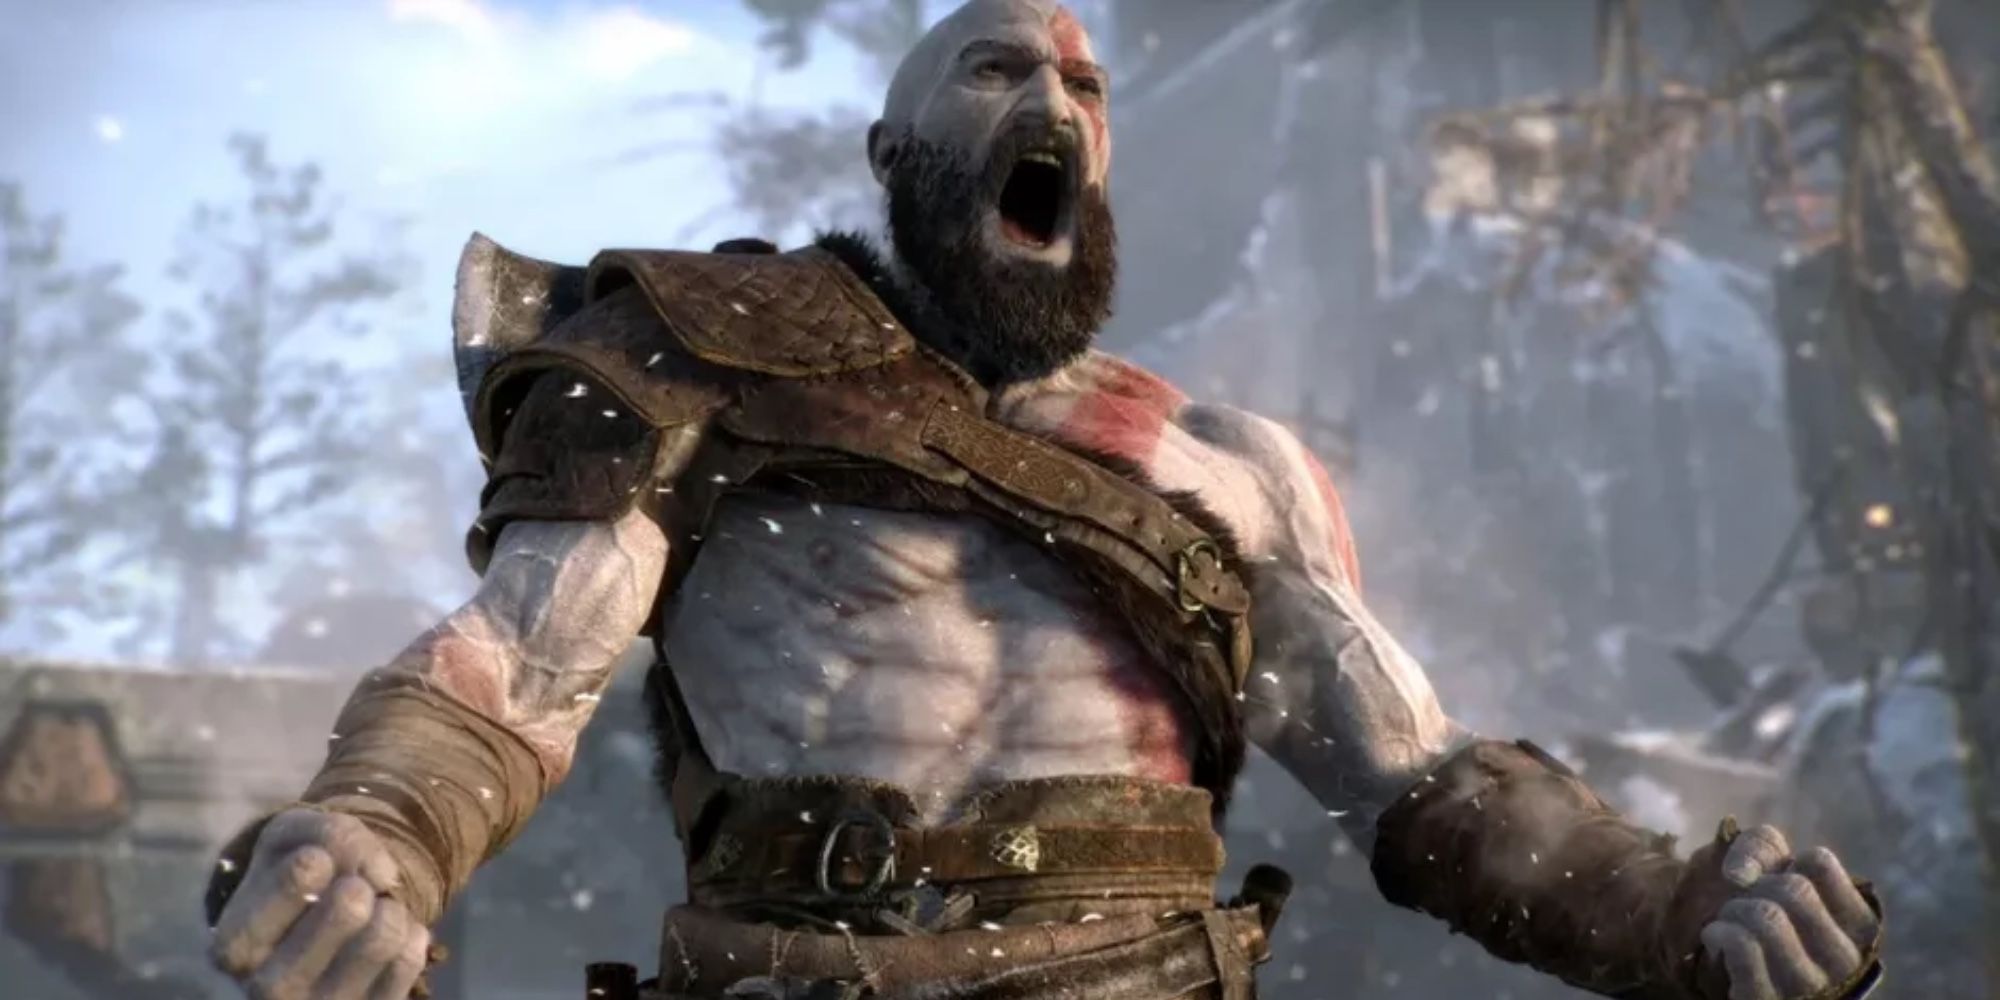 War God Kratos